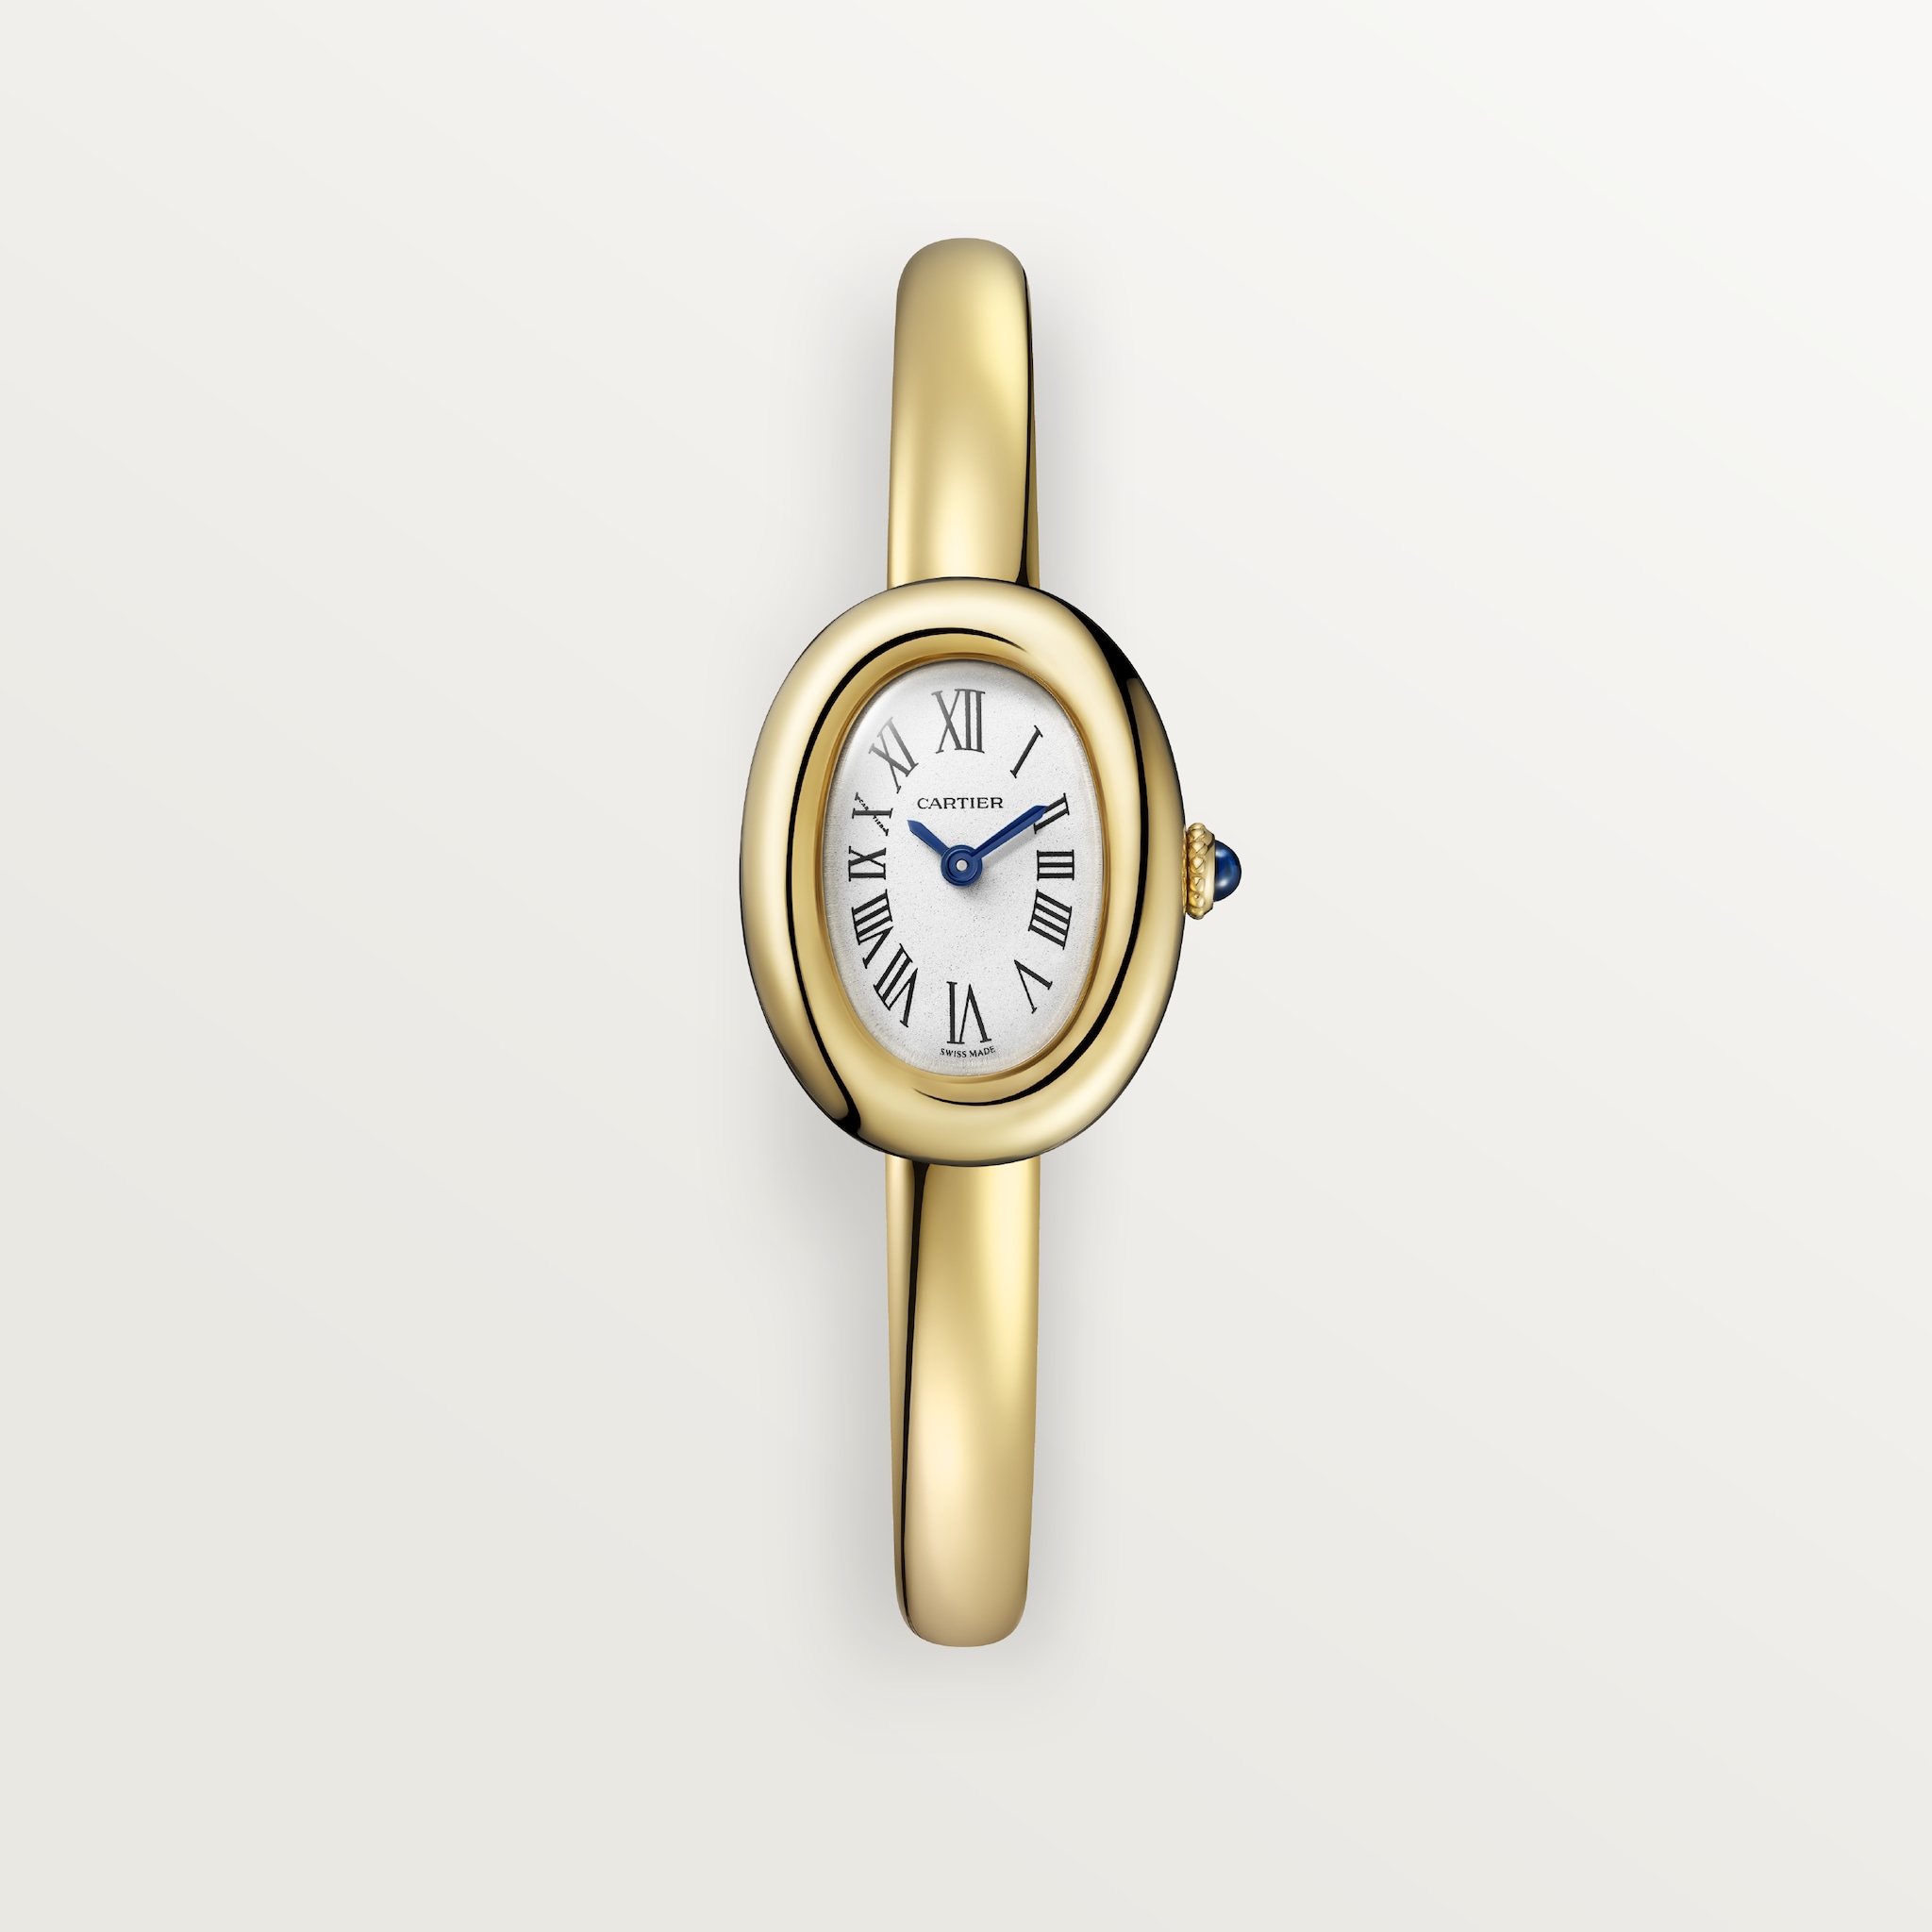 Reloj Baignoire (Tamaño 16)Tamaño mini, movimiento de cuarzo, oro amarillo